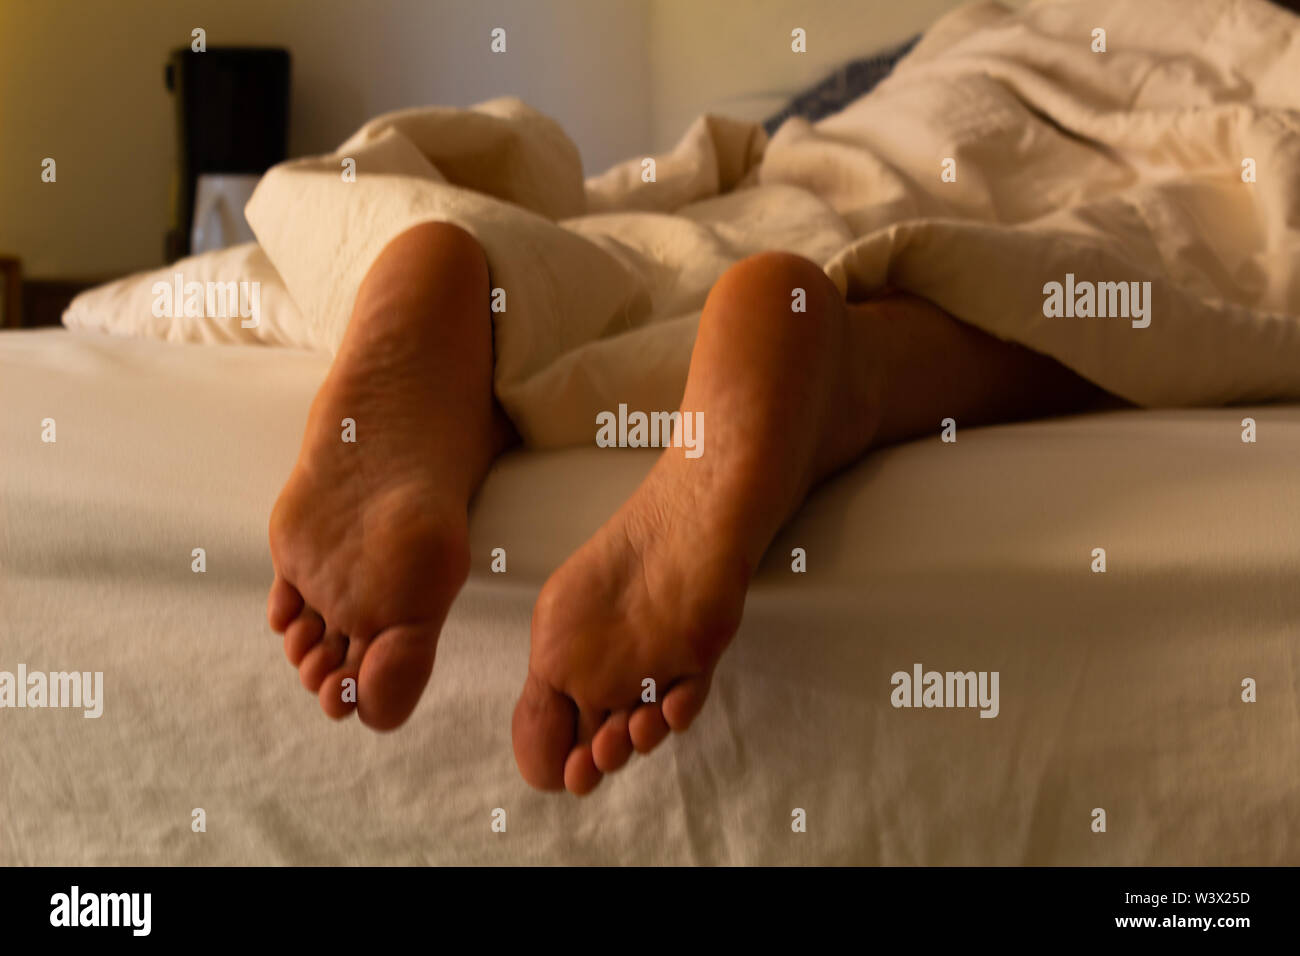 Hispanic Frau im Hotel Bed ruht, bedeckt mit einer Decke (unterschiedliche Fuß und Full Body Shots) die Idee der ​​Rest zu konzipieren Stockfoto